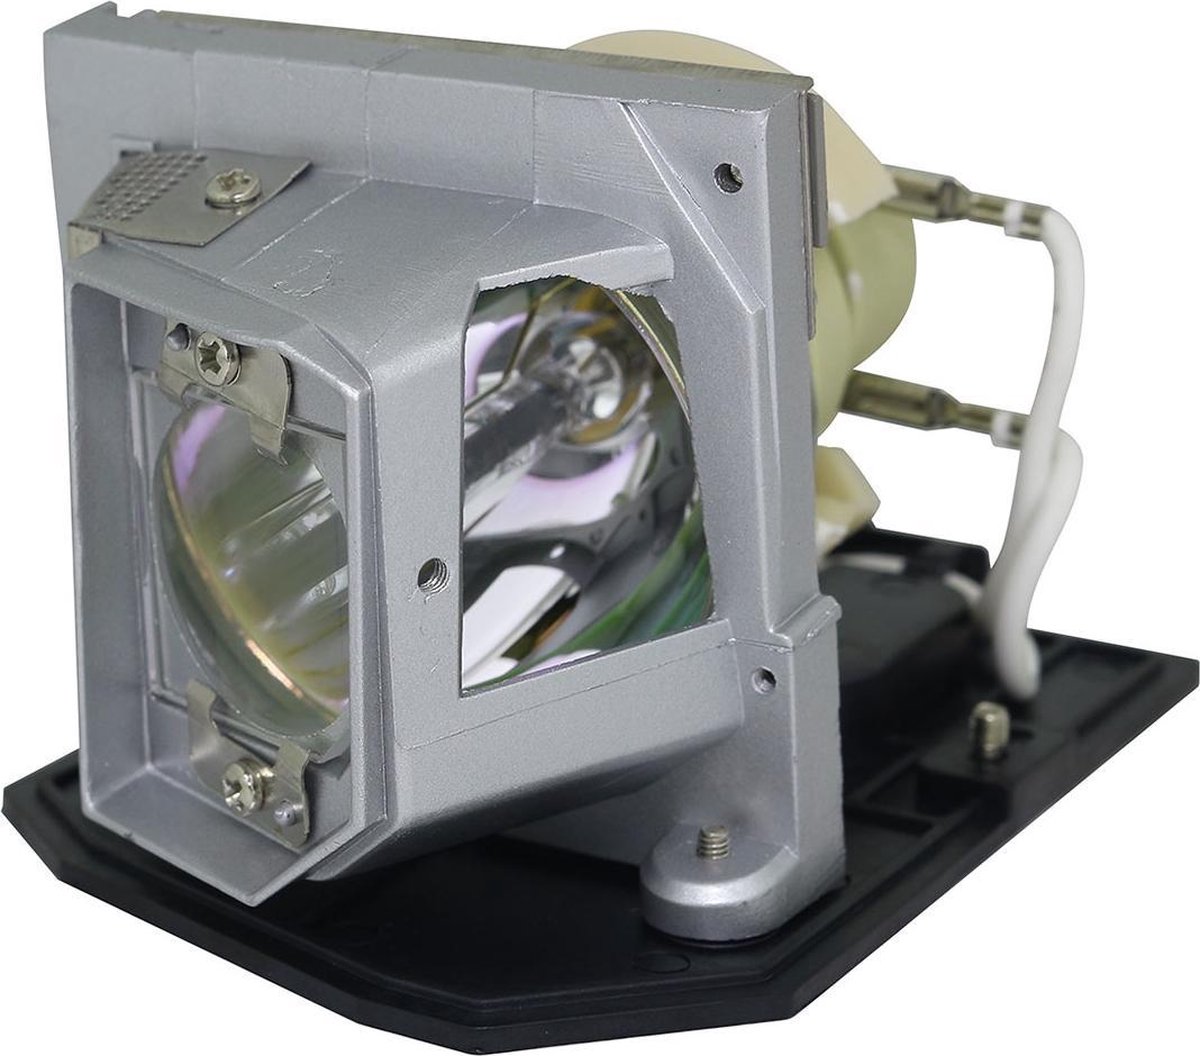 Beamerlamp geschikt voor de OPTOMA HD20 - SERIAL Q8N~Q8Z beamer, lamp code BL-FP230J / SP.8MQ01GC01. Bevat originele P-VIP lamp, prestaties gelijk aan origineel. - QualityLamp